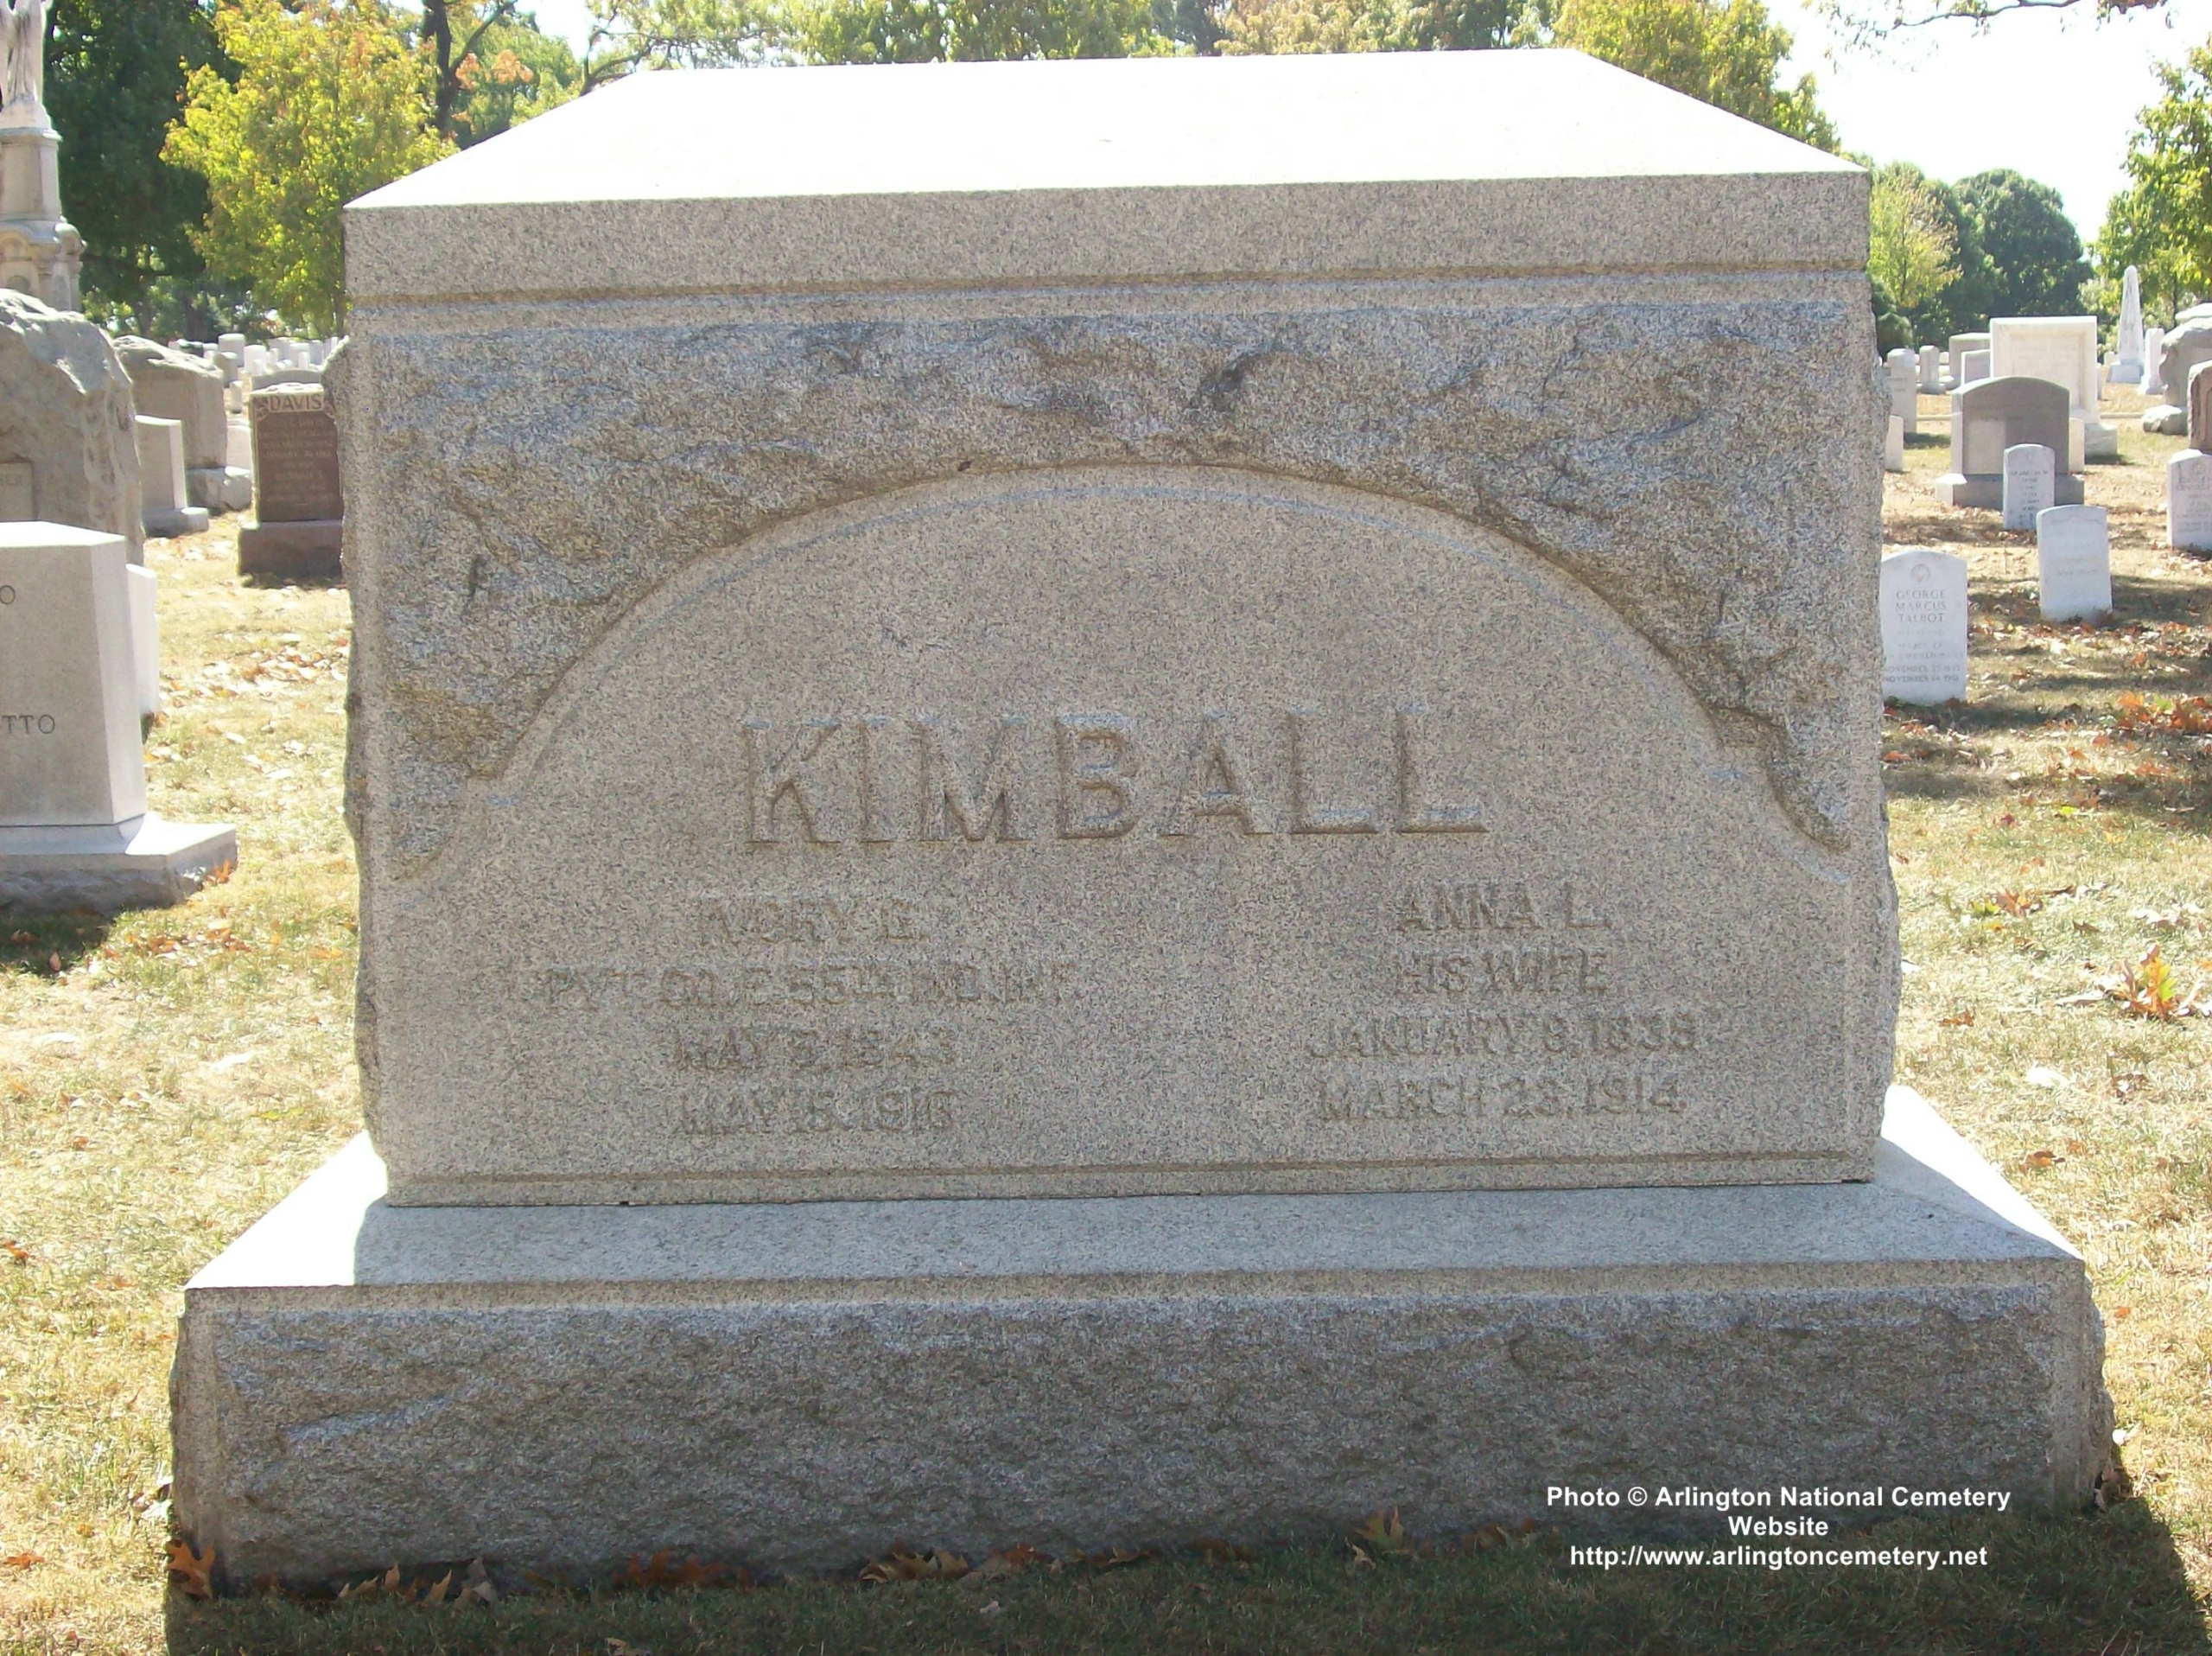 ivory-kimball-gravesite-photo-october-2007-001